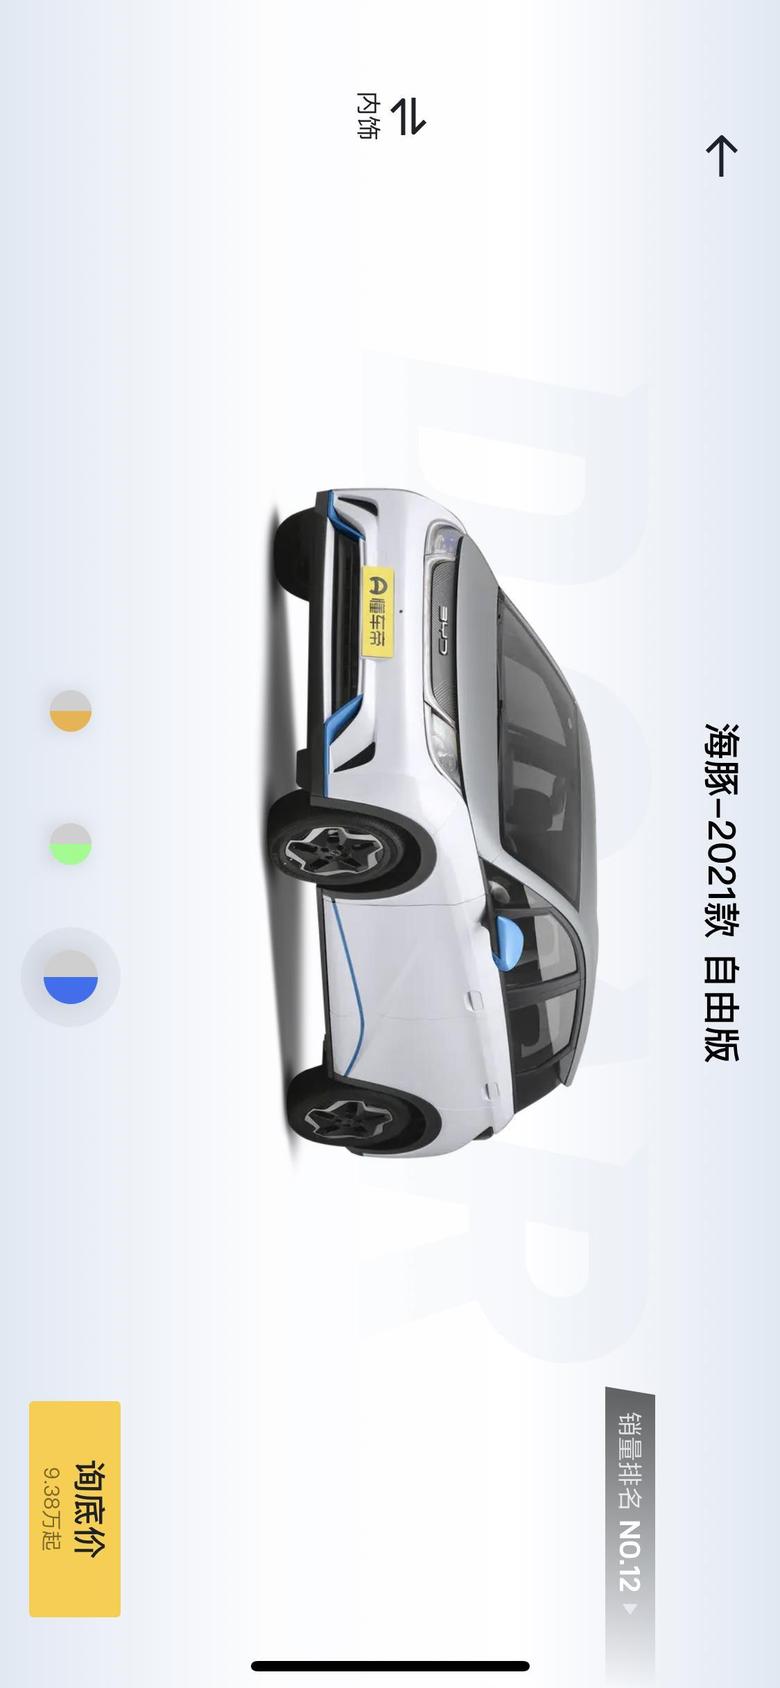 海豚 想询问下，这车在浙江温州能开网约车吗，能过运营证的那种